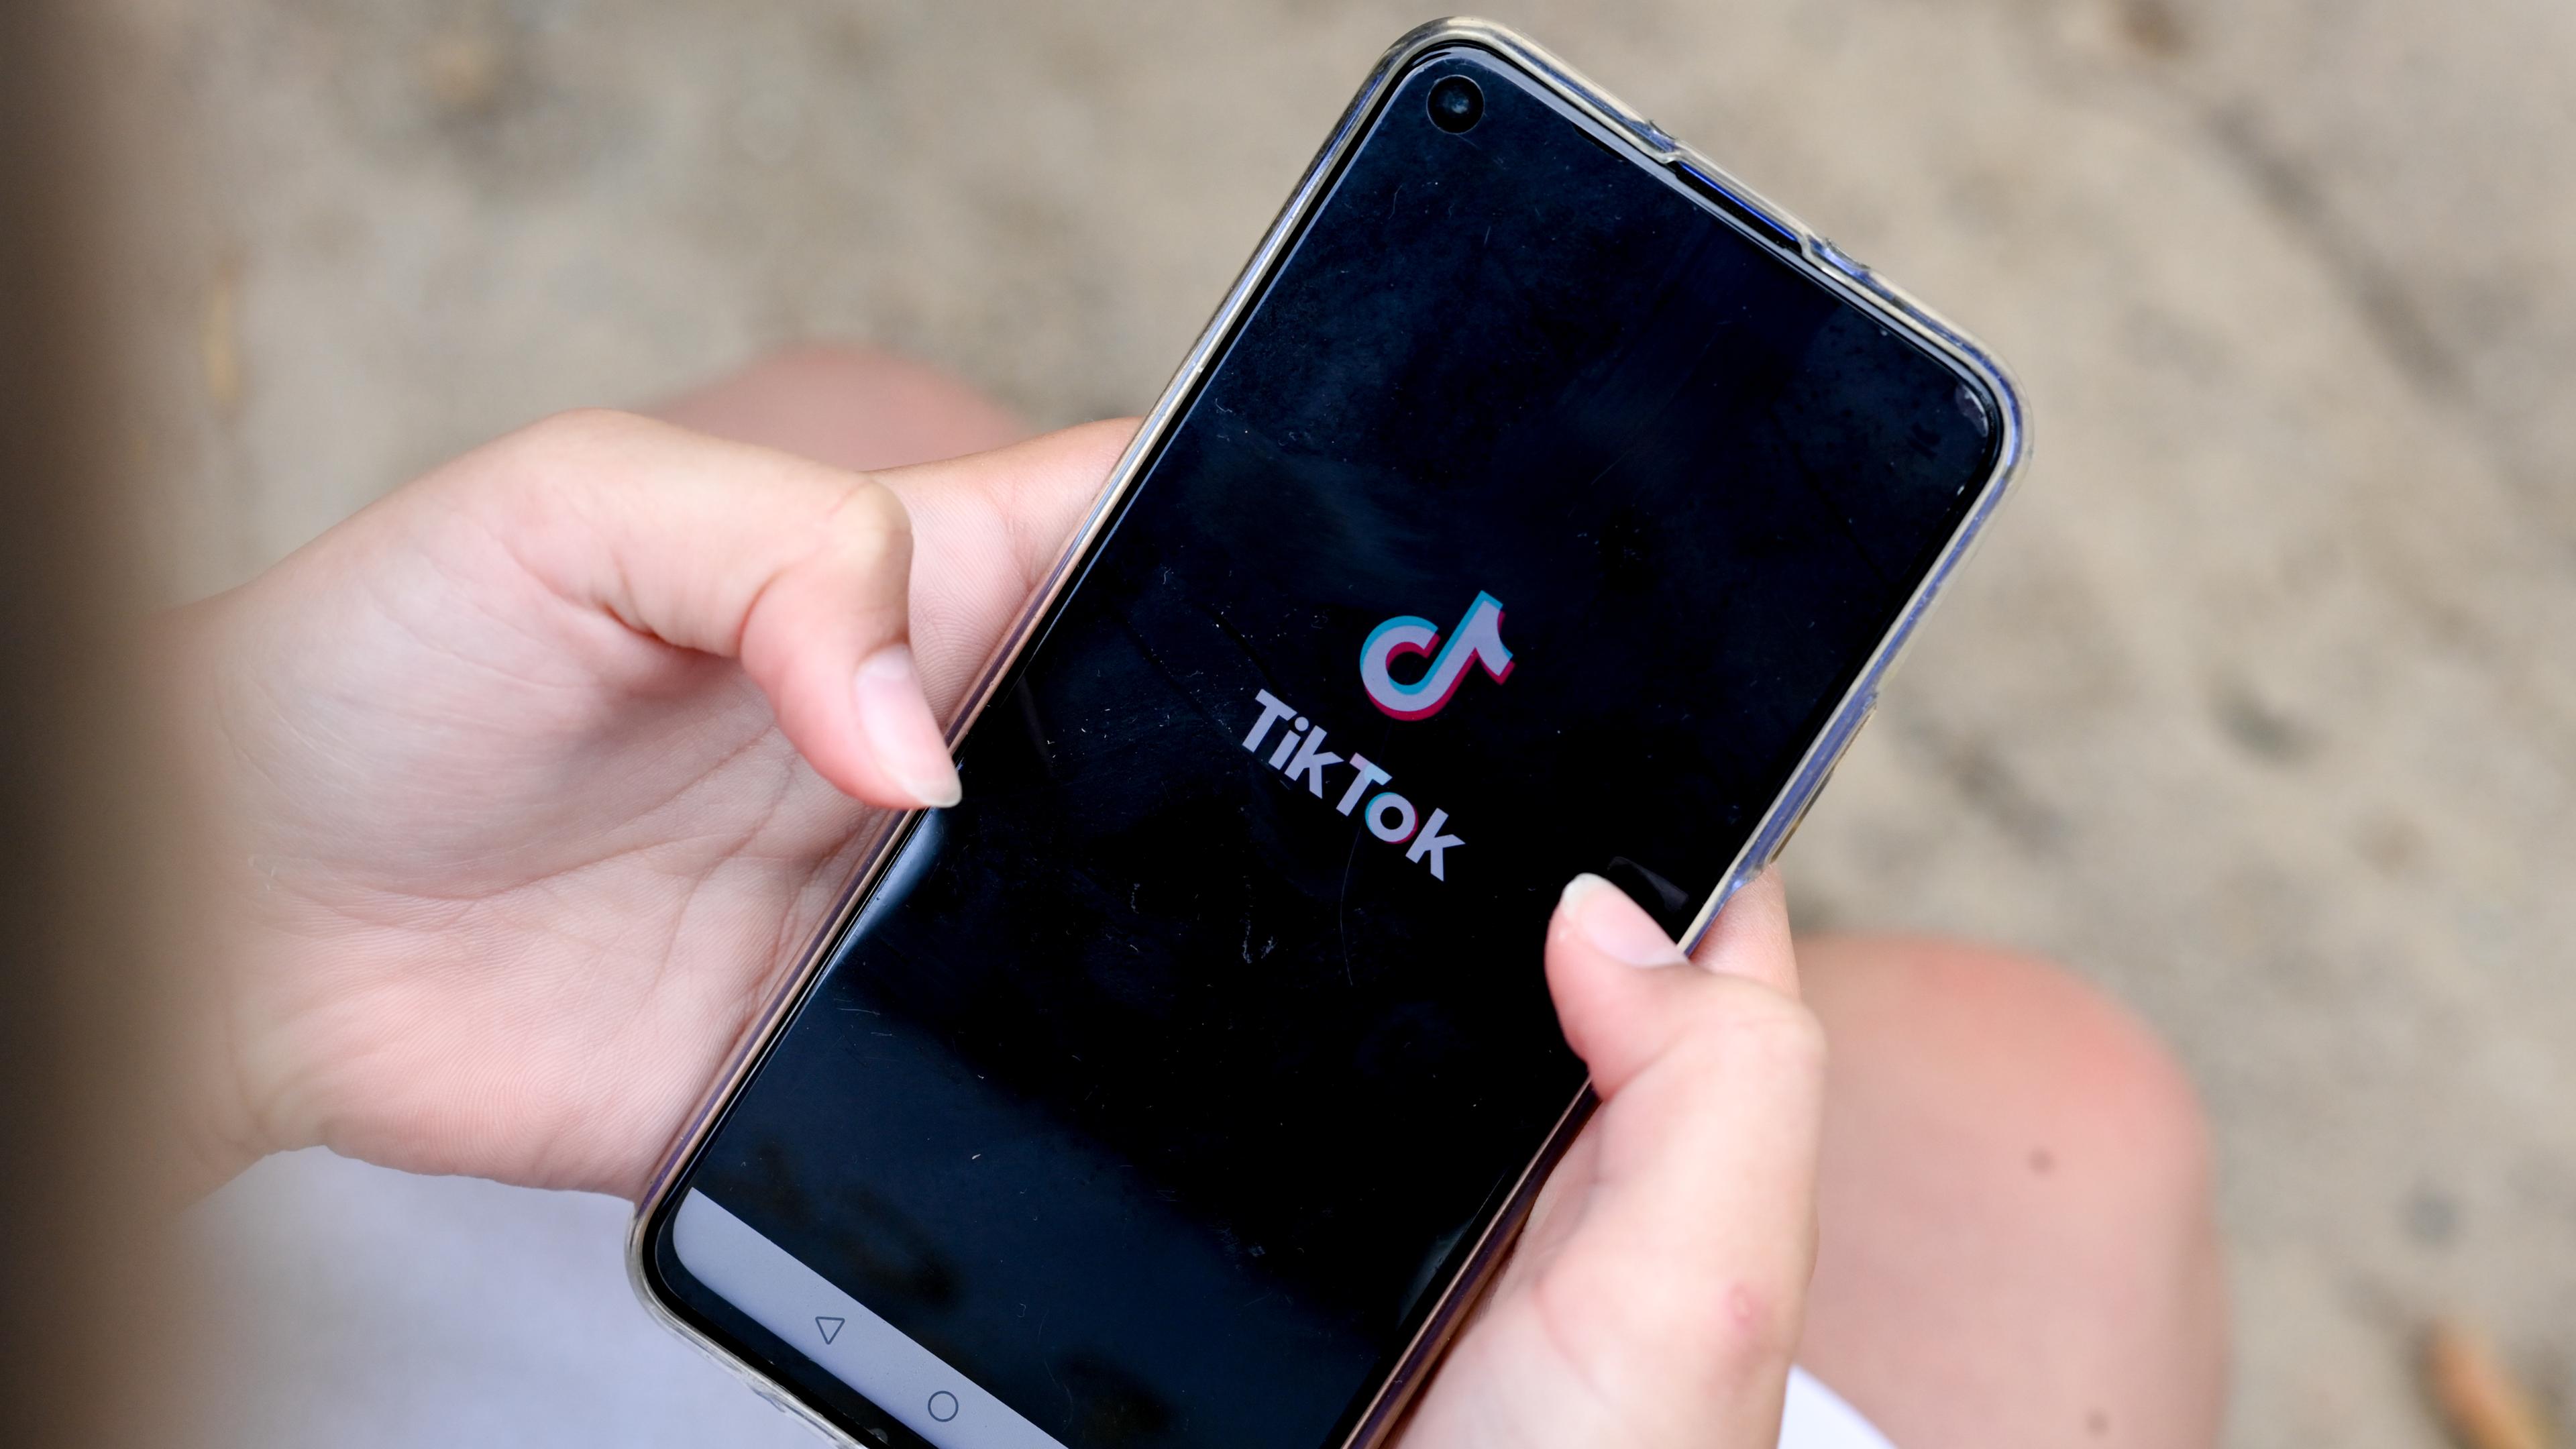 Hände halten ein Smartphone, auf dem das TikTok-Logo zu sehen ist.